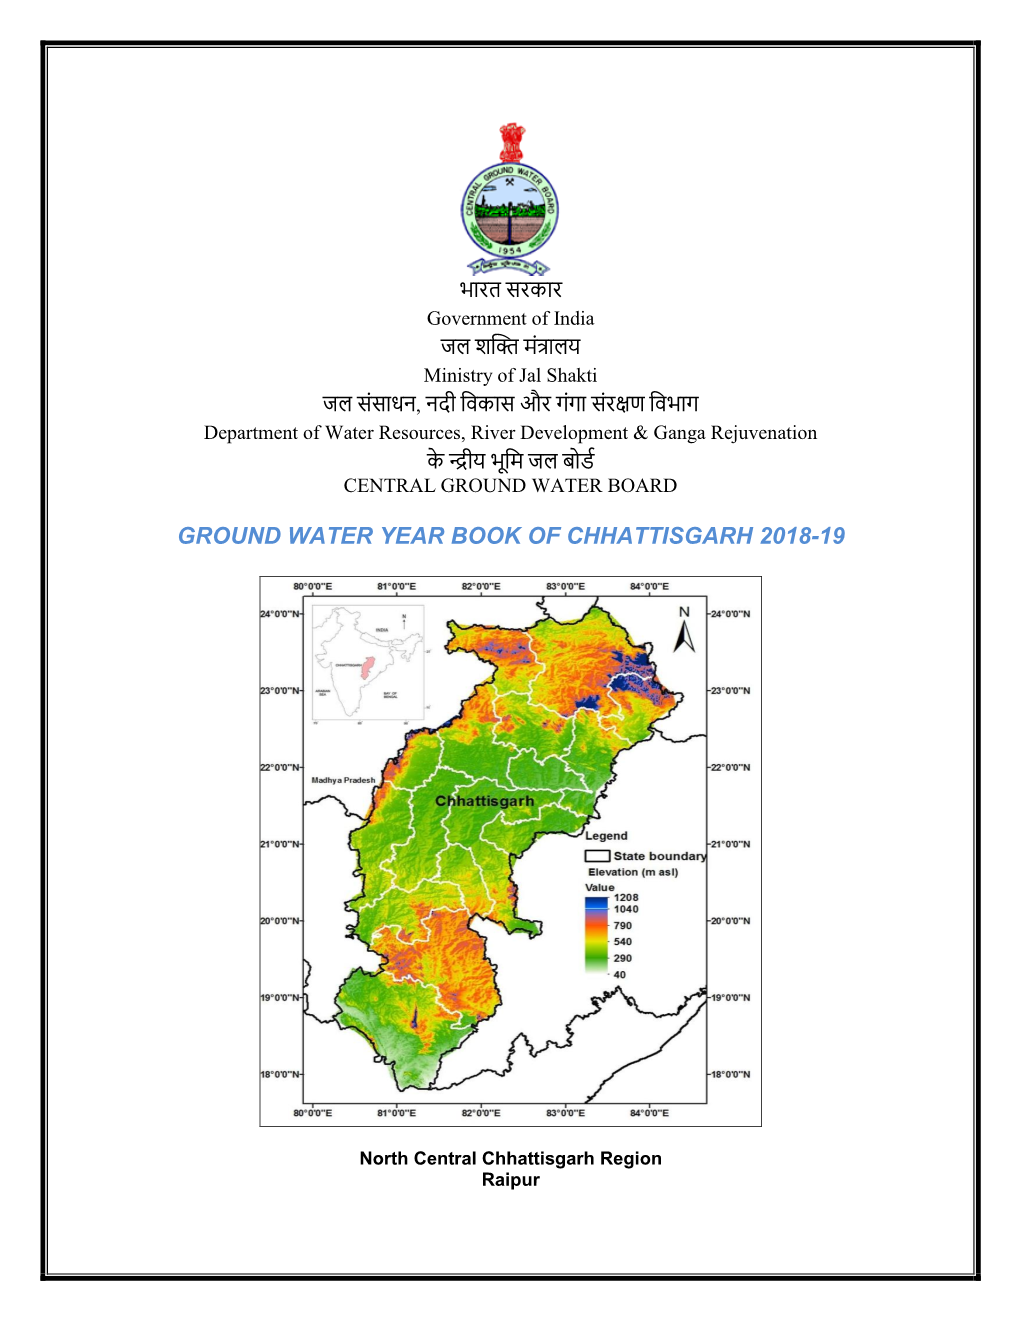 Ground Water Year Book of Chhattisgarh 2018-19